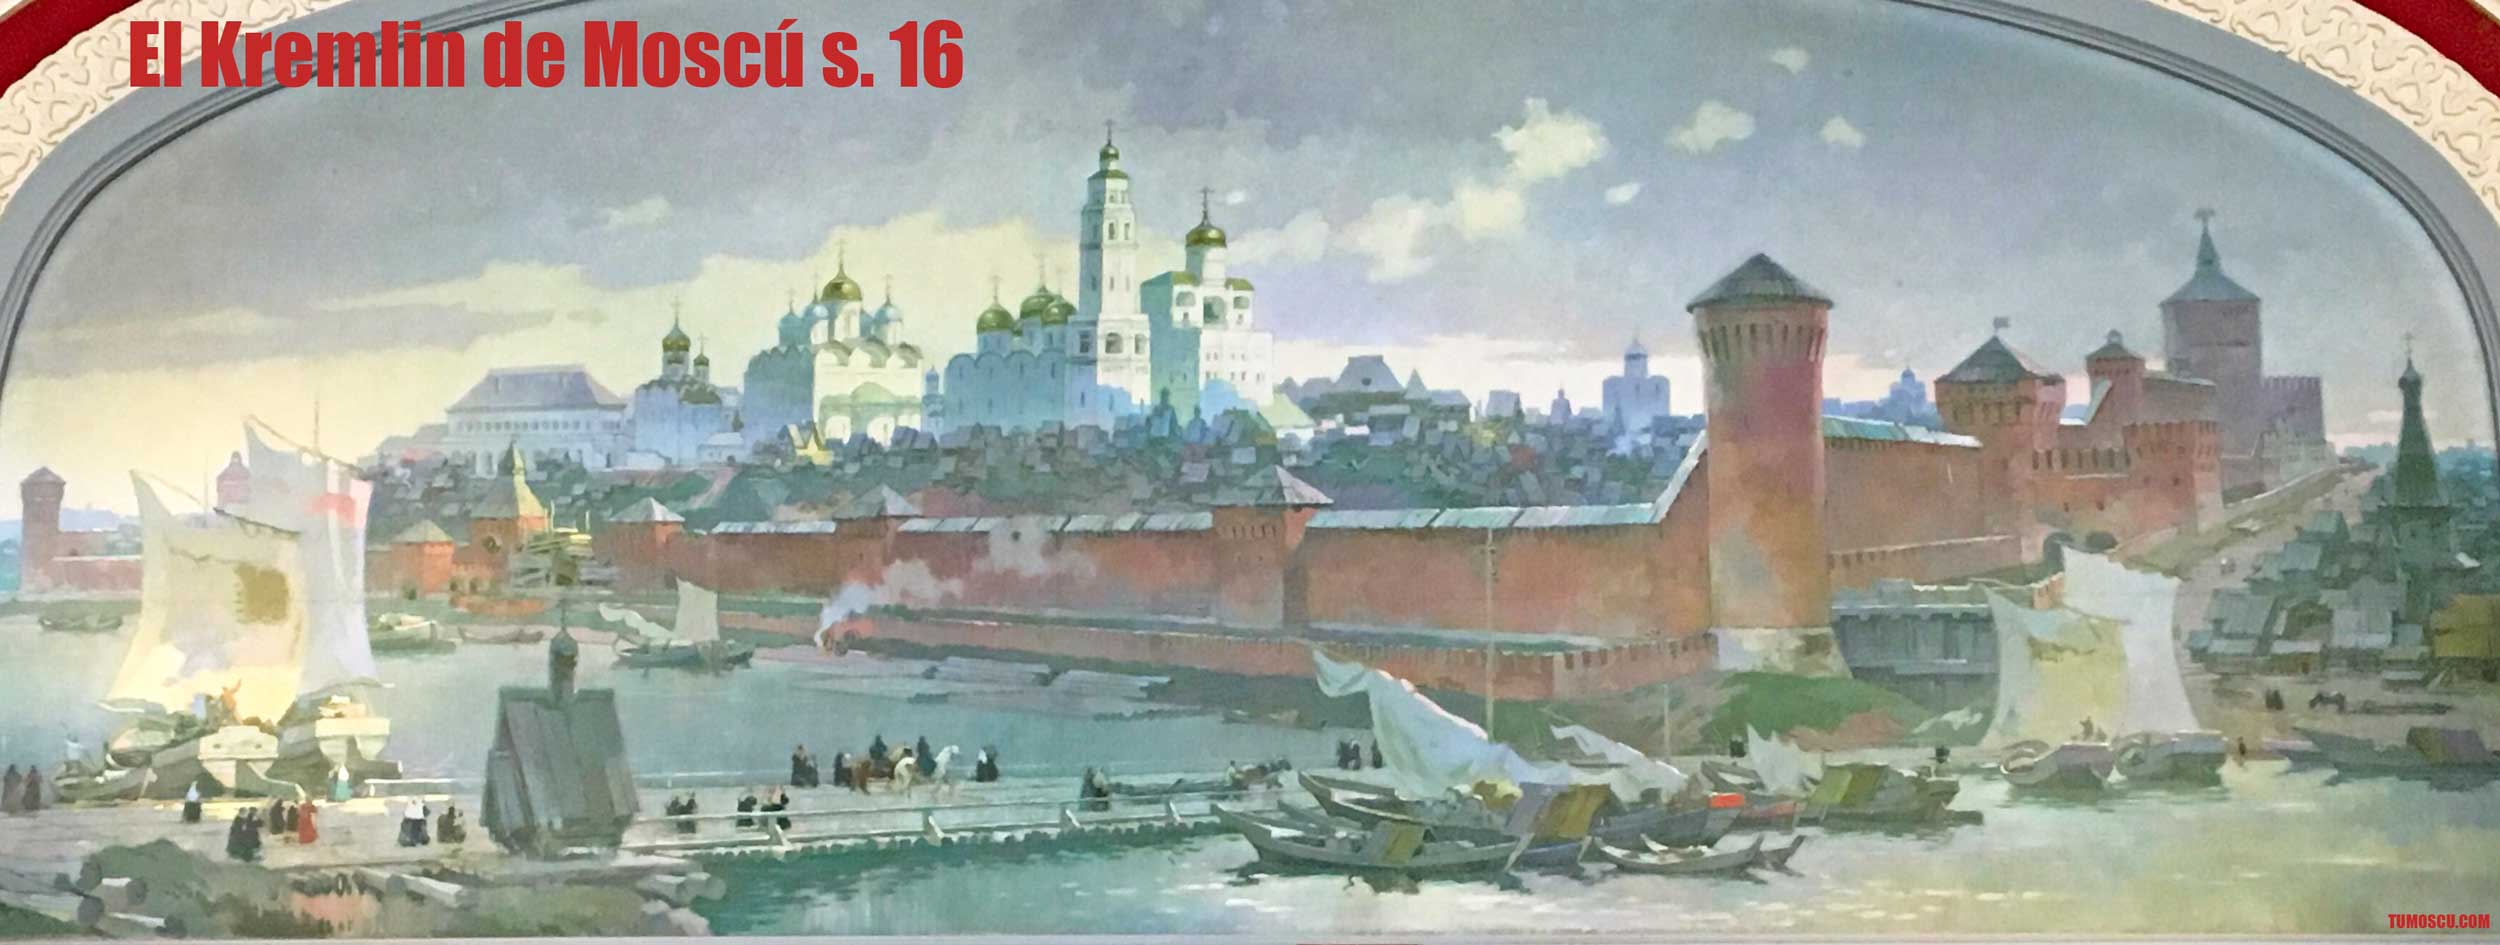 Historia del Kremlin de Moscú. Principios del s. 16 el Kremlin se recunstruye de ladrillo.